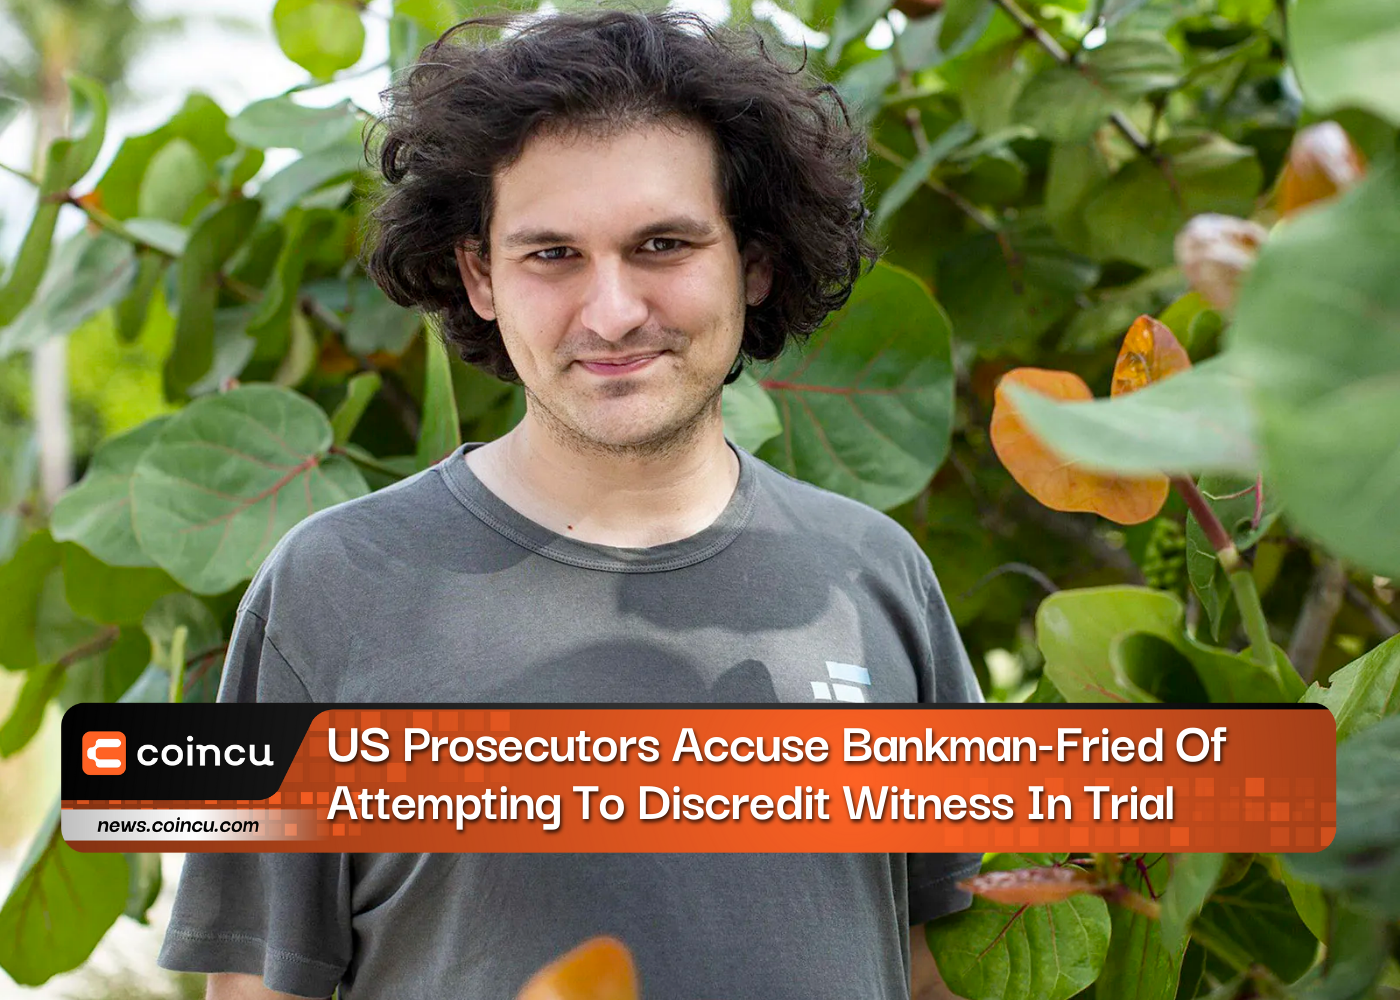 अमेरिकी अभियोजकों ने बैंकमैन-फ़्राईड पर मुकदमे में गवाह को बदनाम करने का प्रयास करने का आरोप लगाया